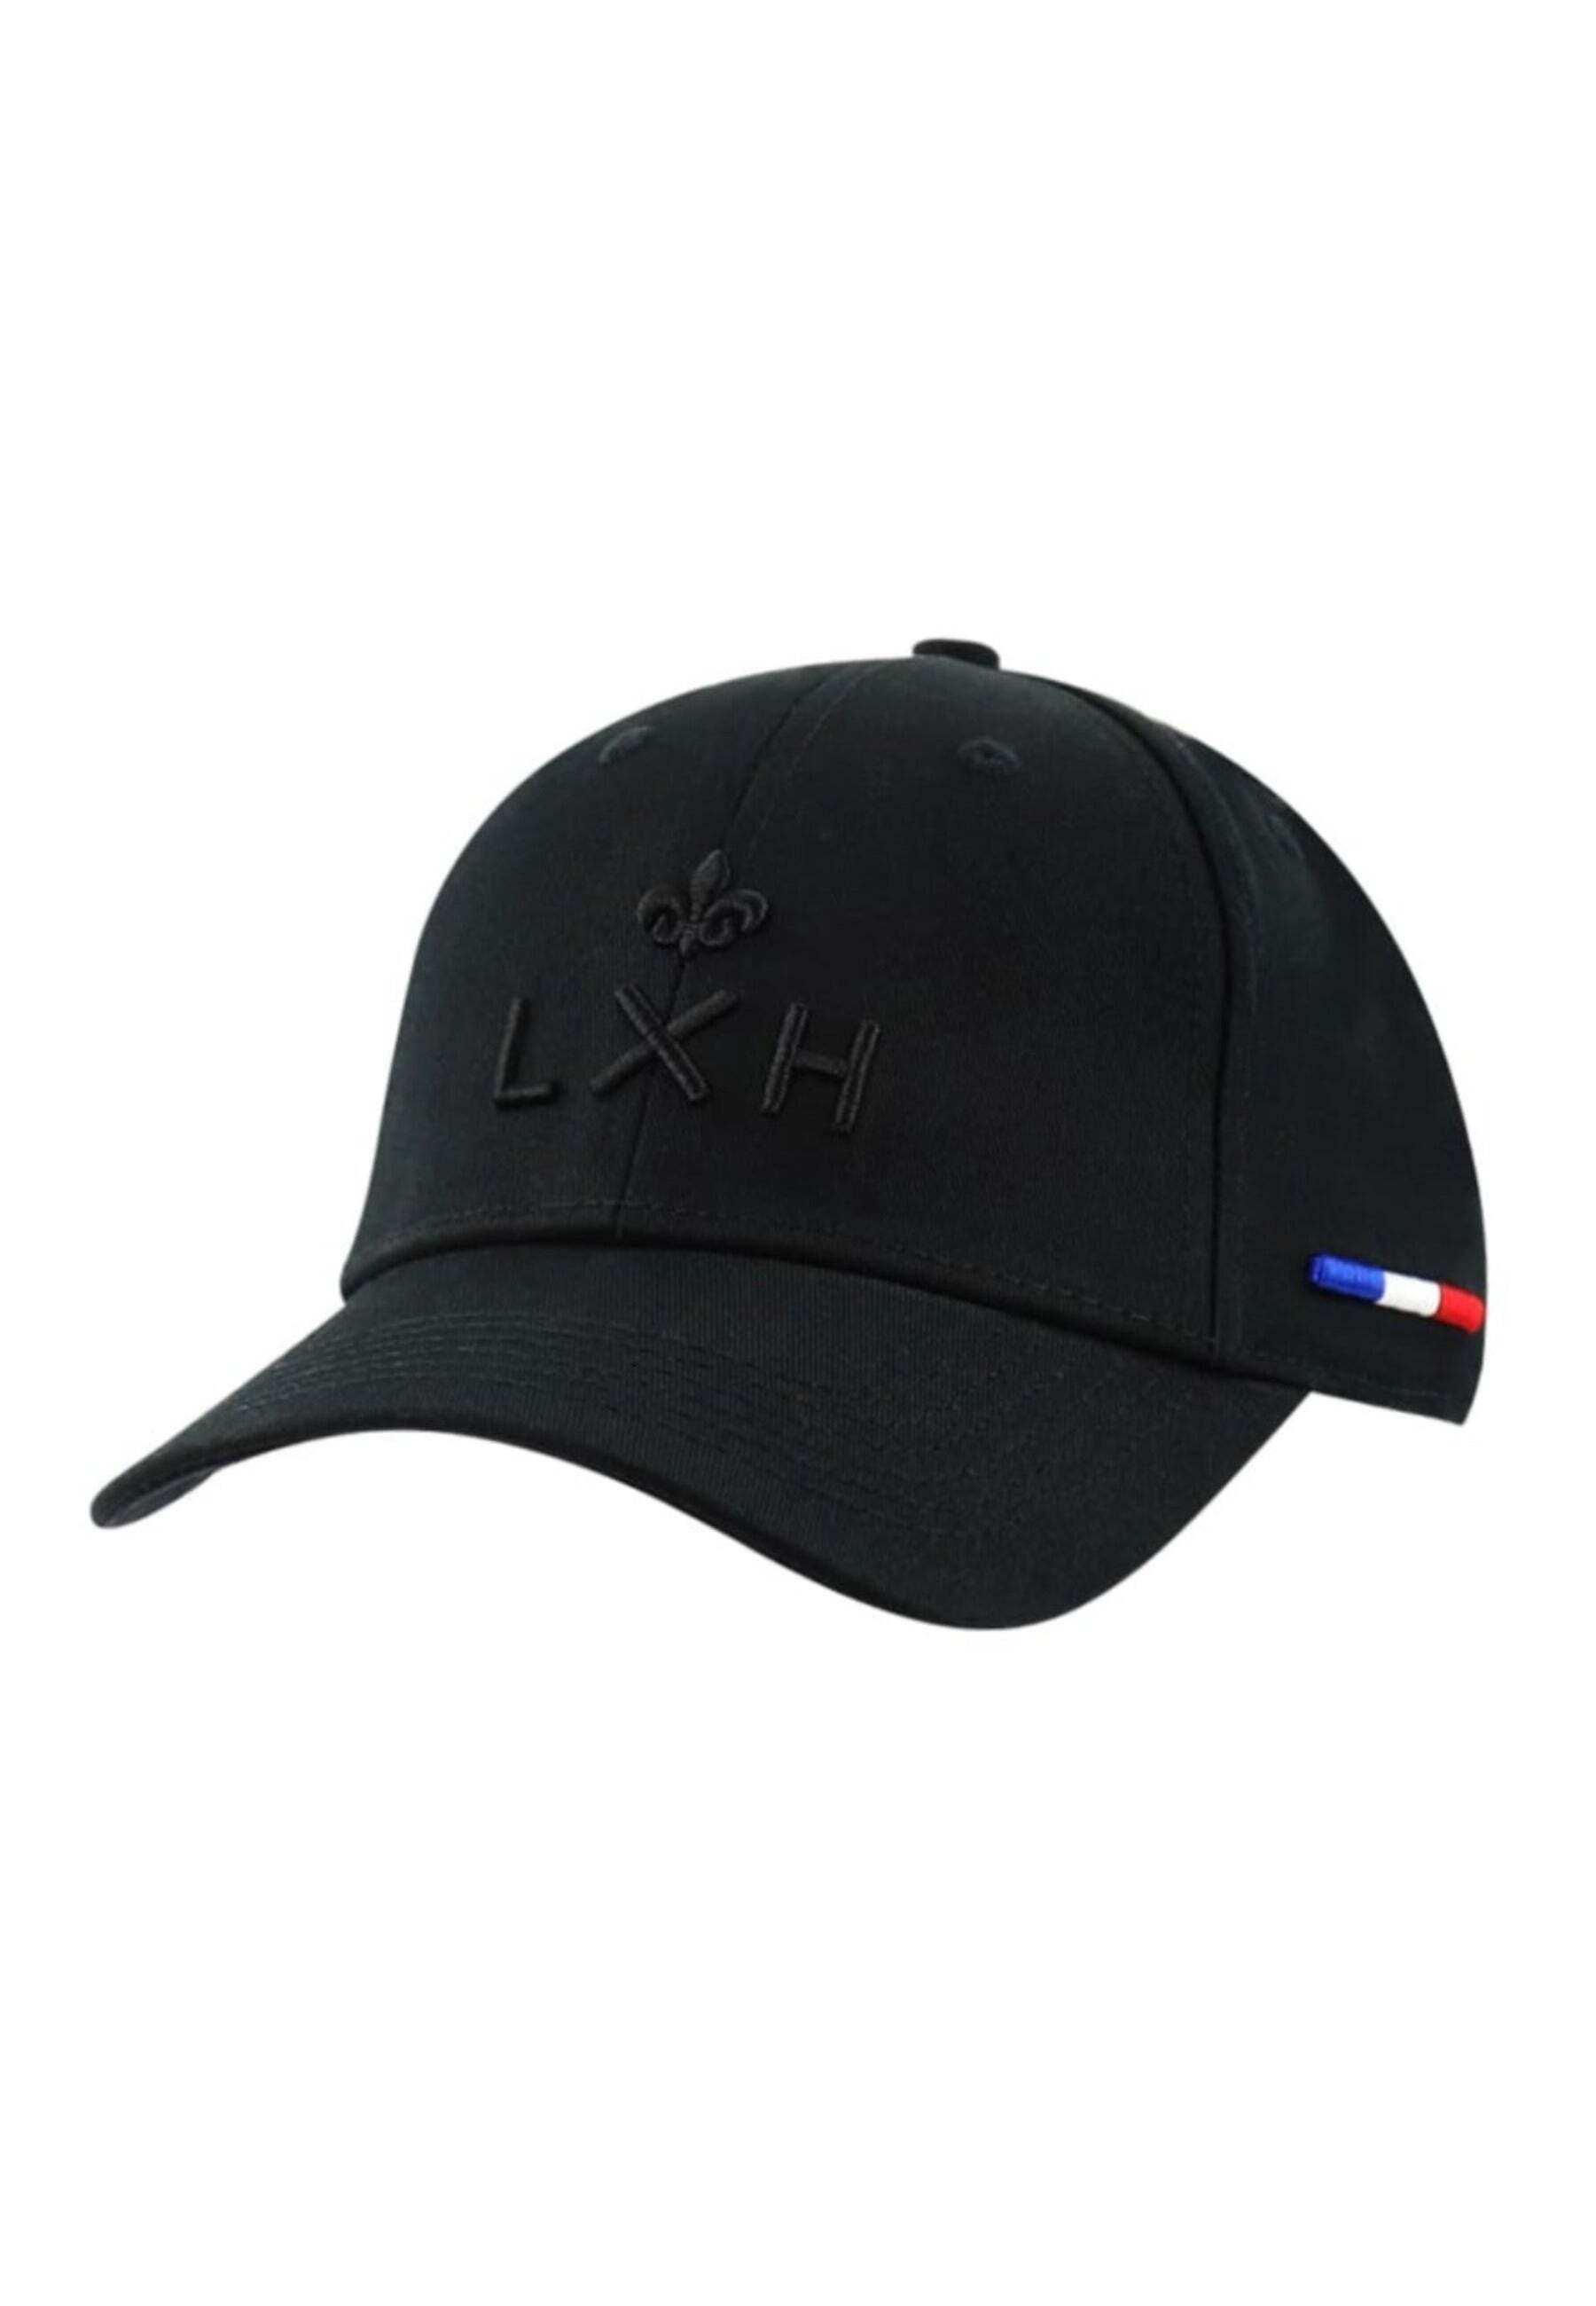 LXH Baseball Cap »LXH Caps Casquette Pop - La Havane«